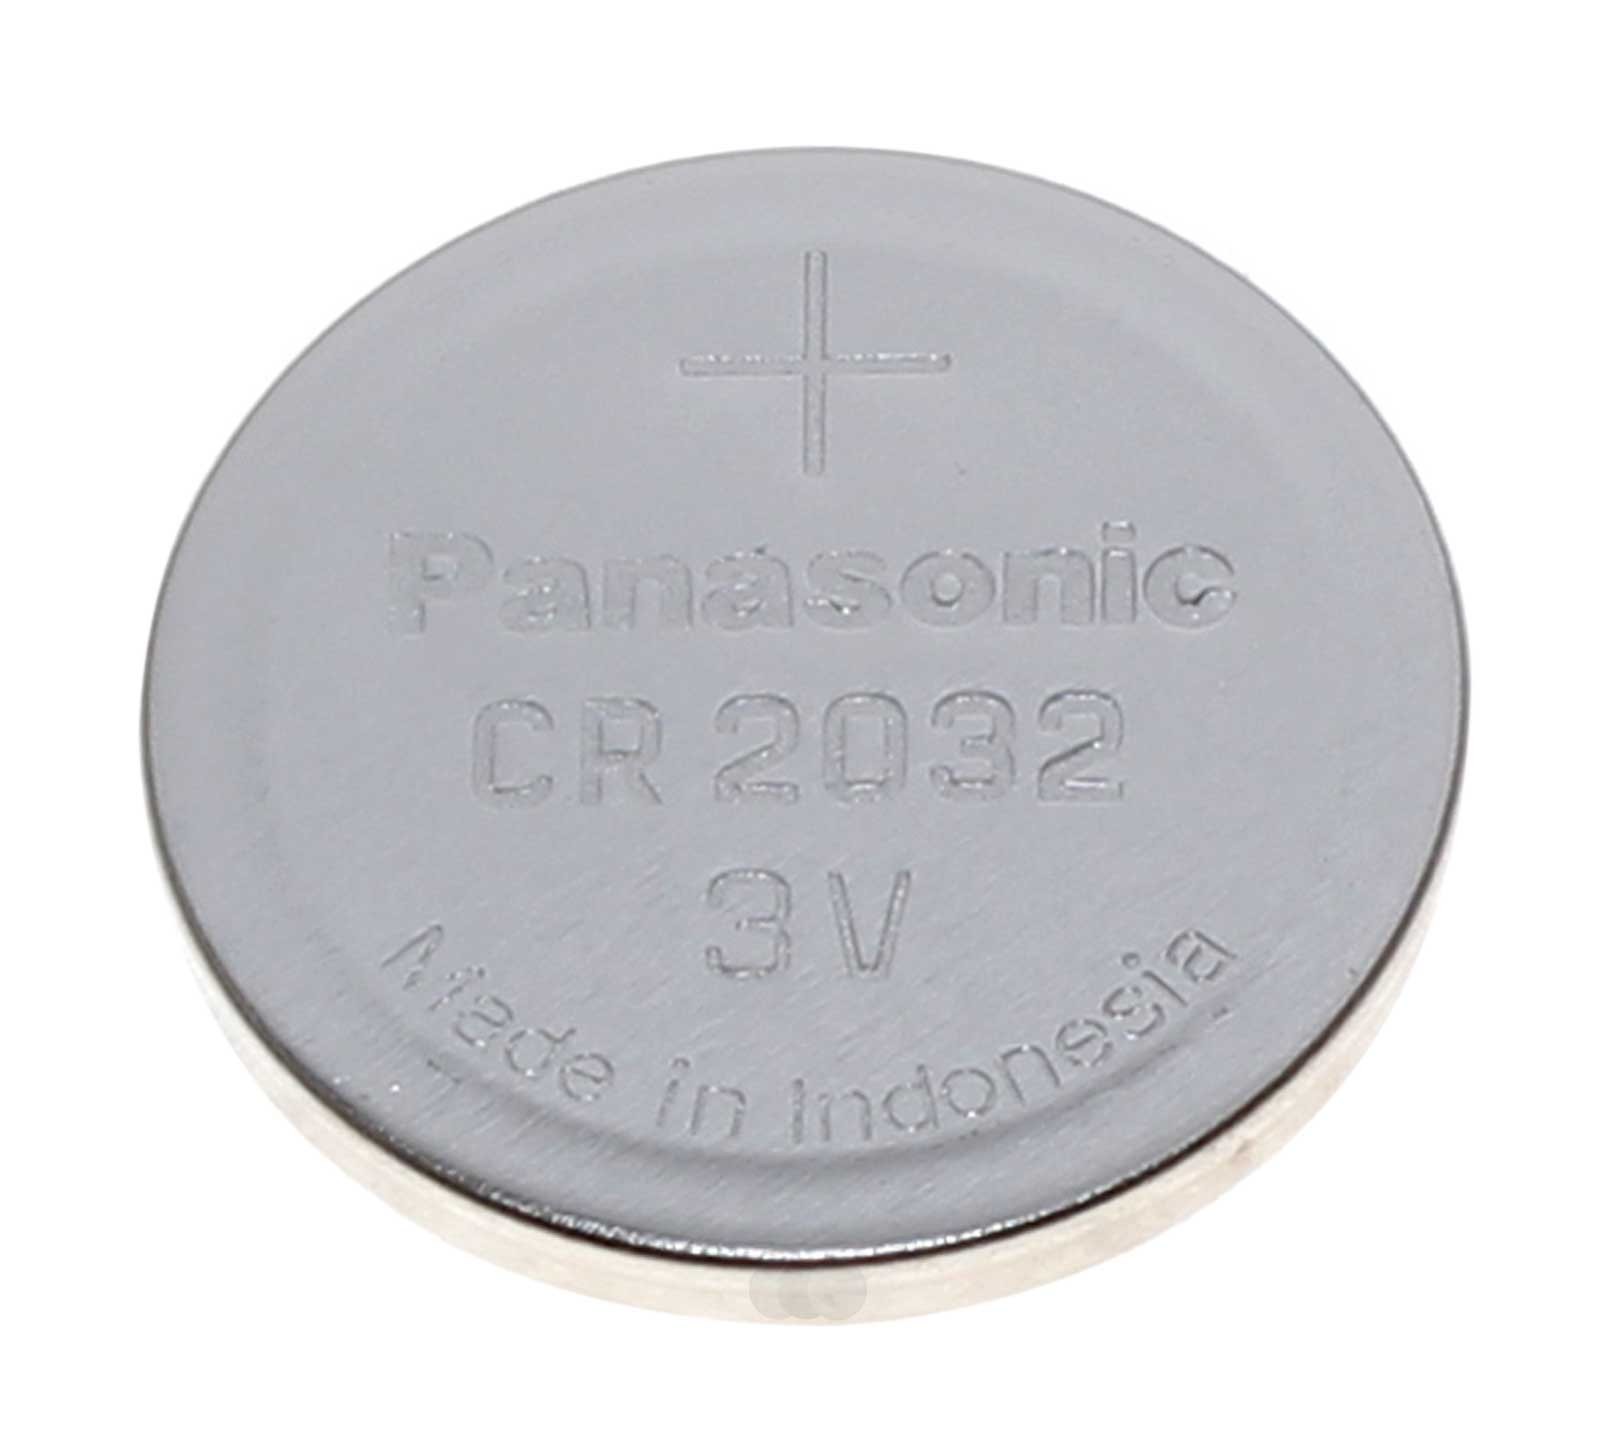 Batterie für VW Golf 5 Autoschlüssel Funksender, Panasonic CR2032 Lithium  Knopfzelle